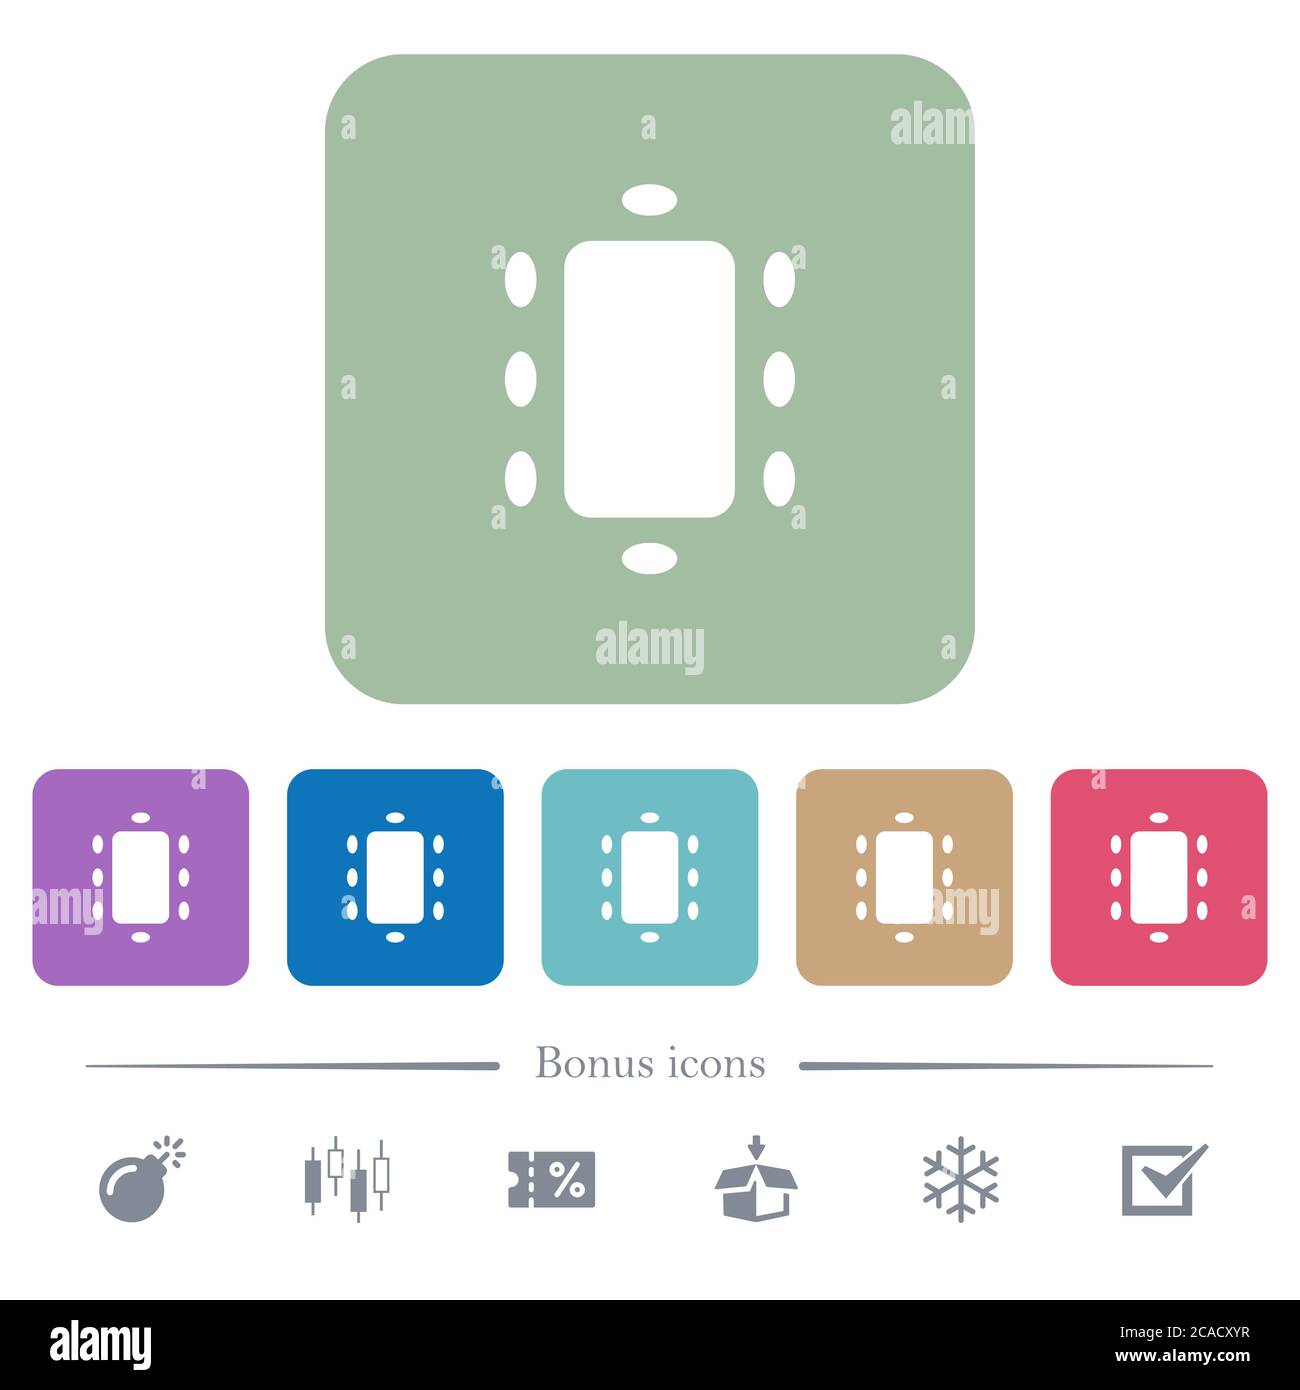 Rencontre des icônes blanches plates sur des arrière-plans carrés de couleur arrondie. 6 icônes bonus incluses Illustration de Vecteur